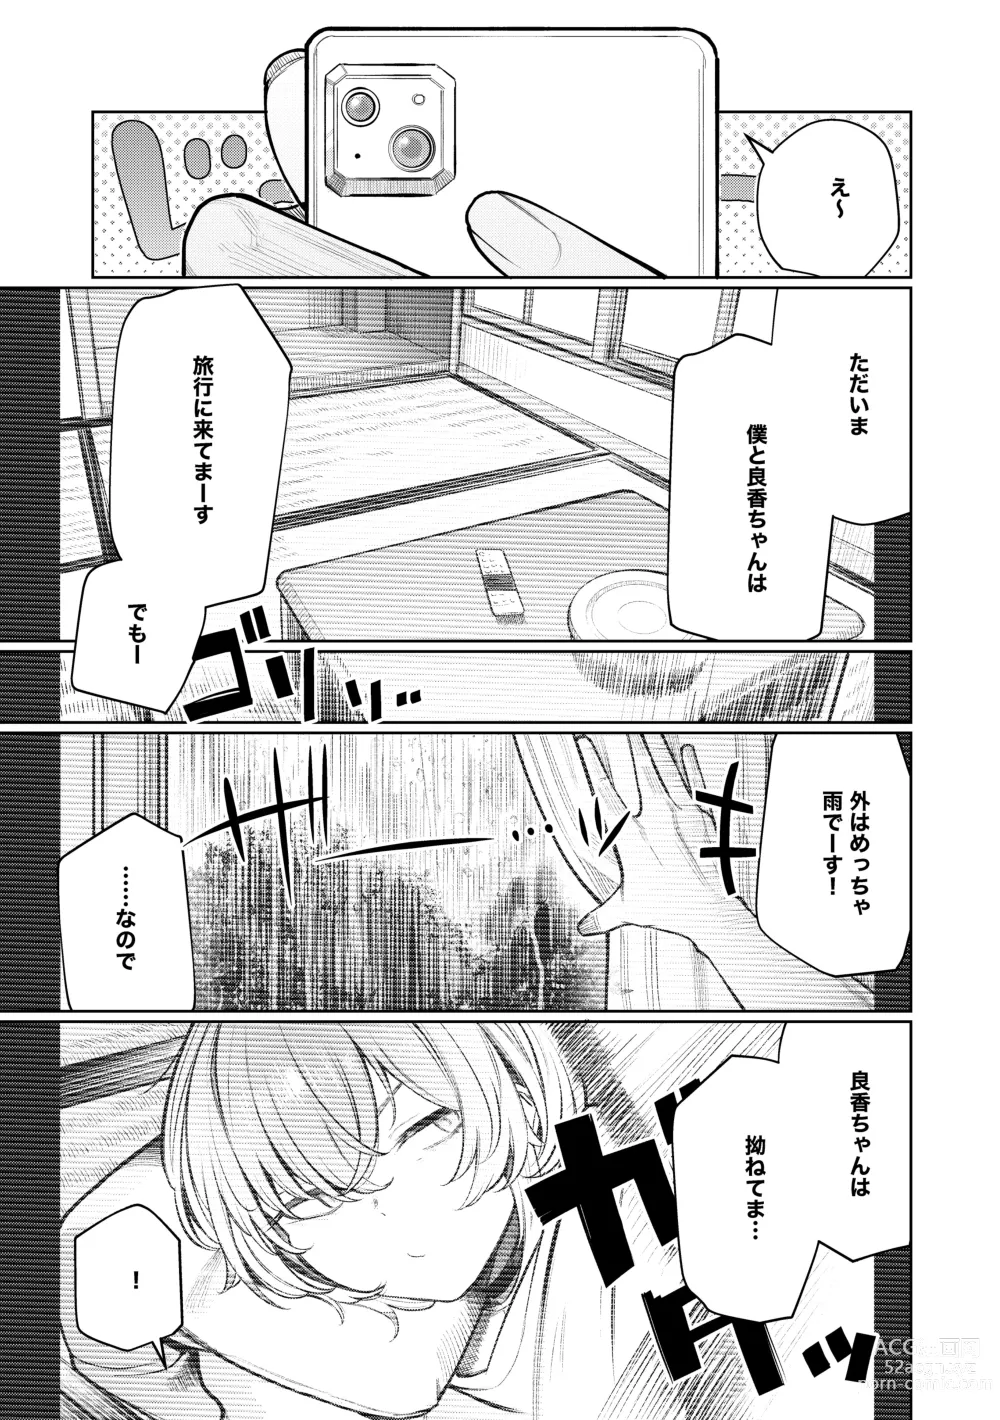 Page 5 of doujinshi Furyouppoi Kanojo to Daradara Hamedori Shitai.